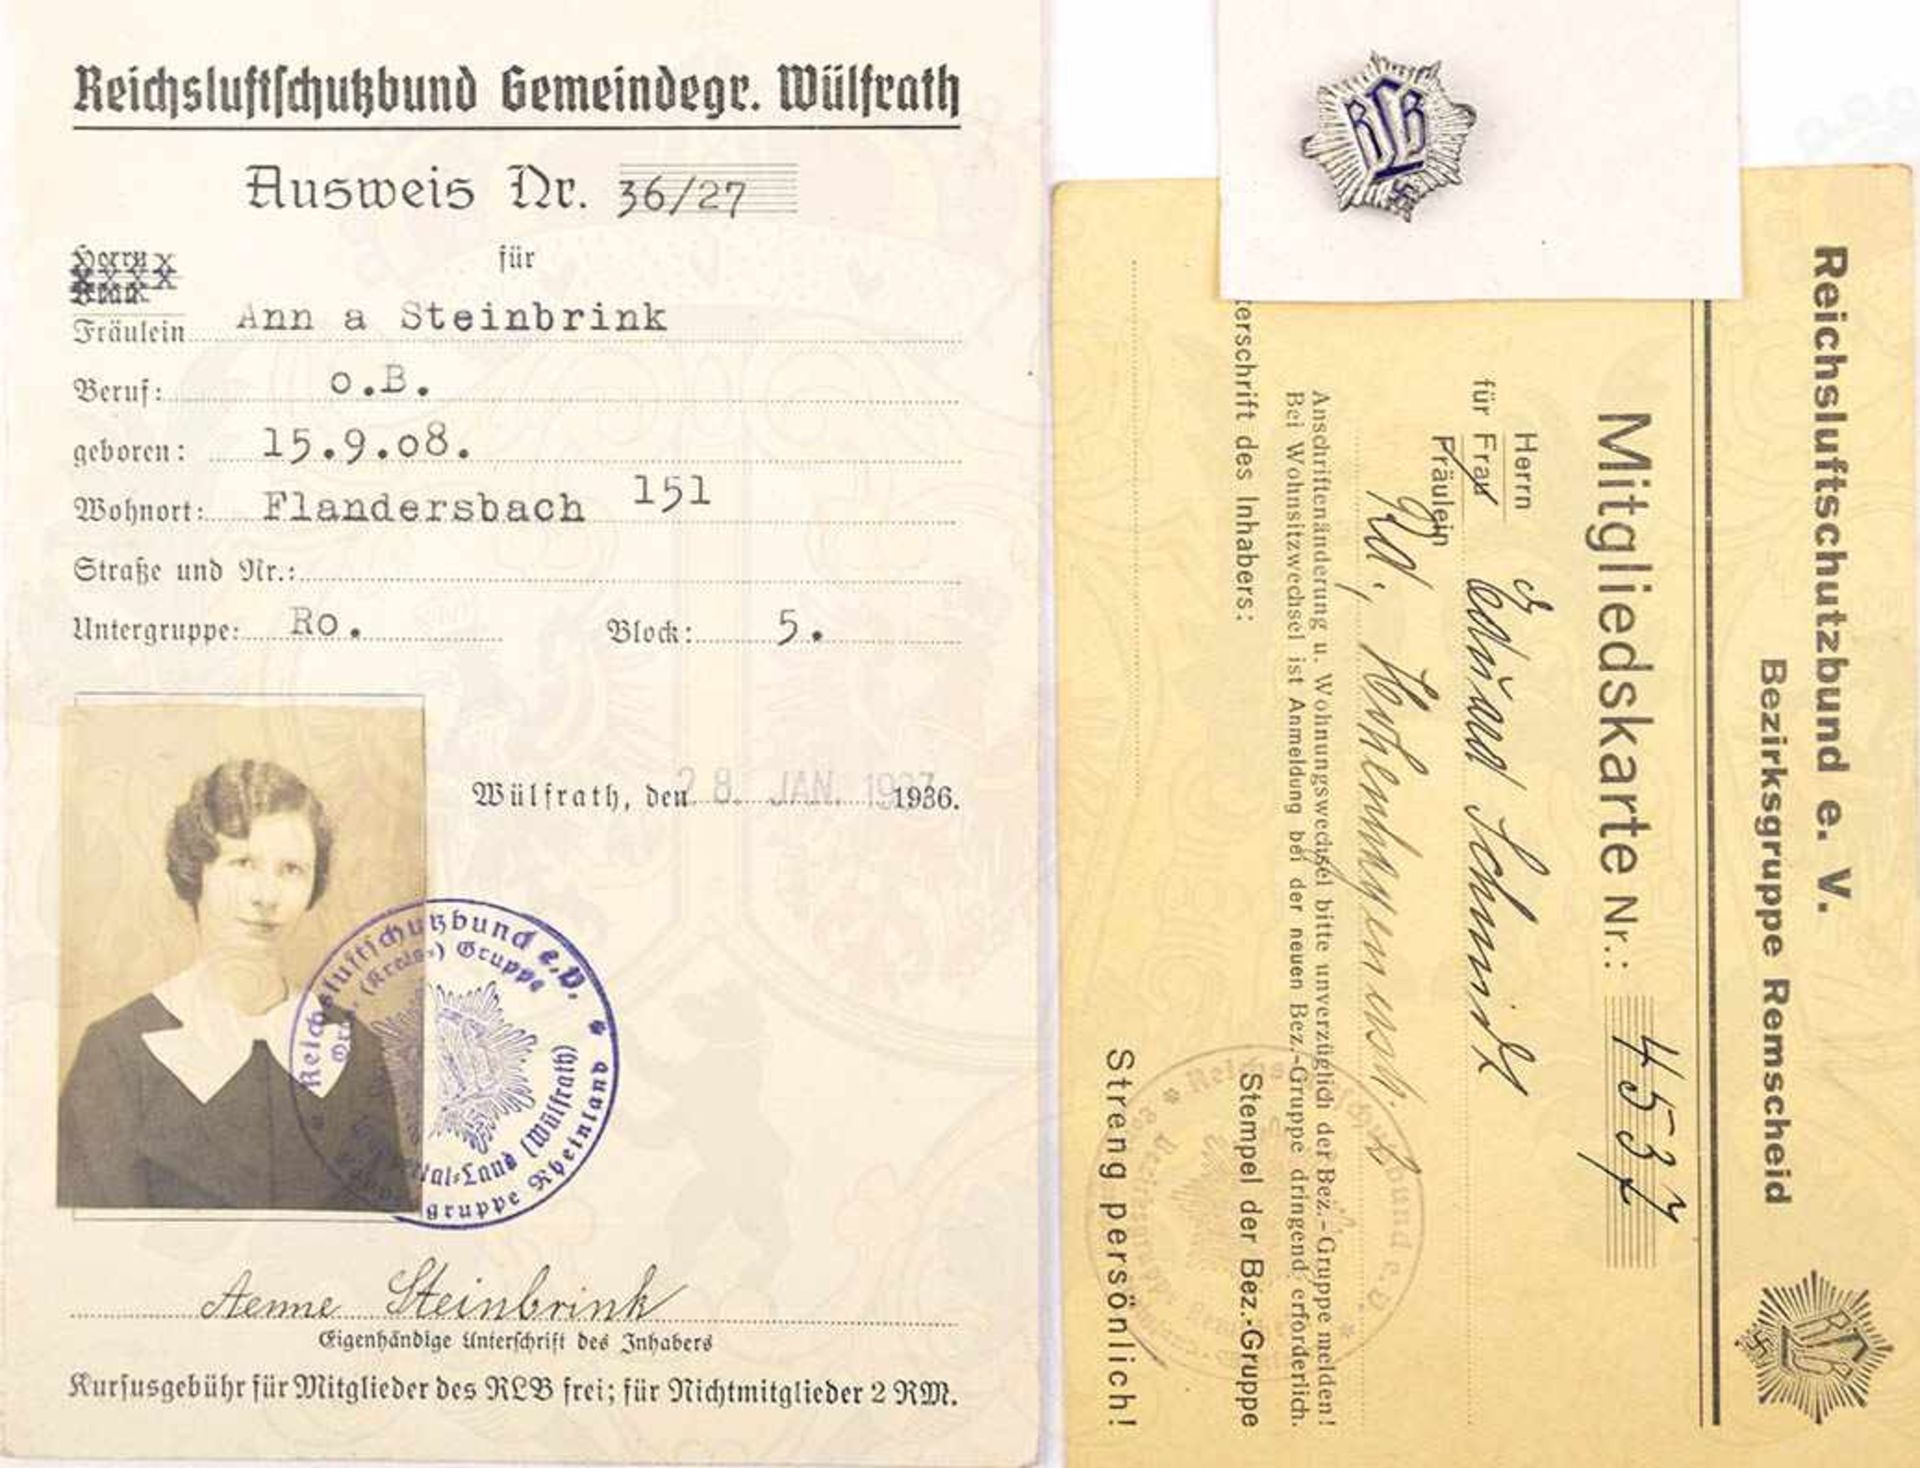 2 RLB-MITGLIEDSAUSWEISE, junge Frau in Wülfrath/Flandersbach, 1937, m. Lichtbild, 2 Prüfungen als